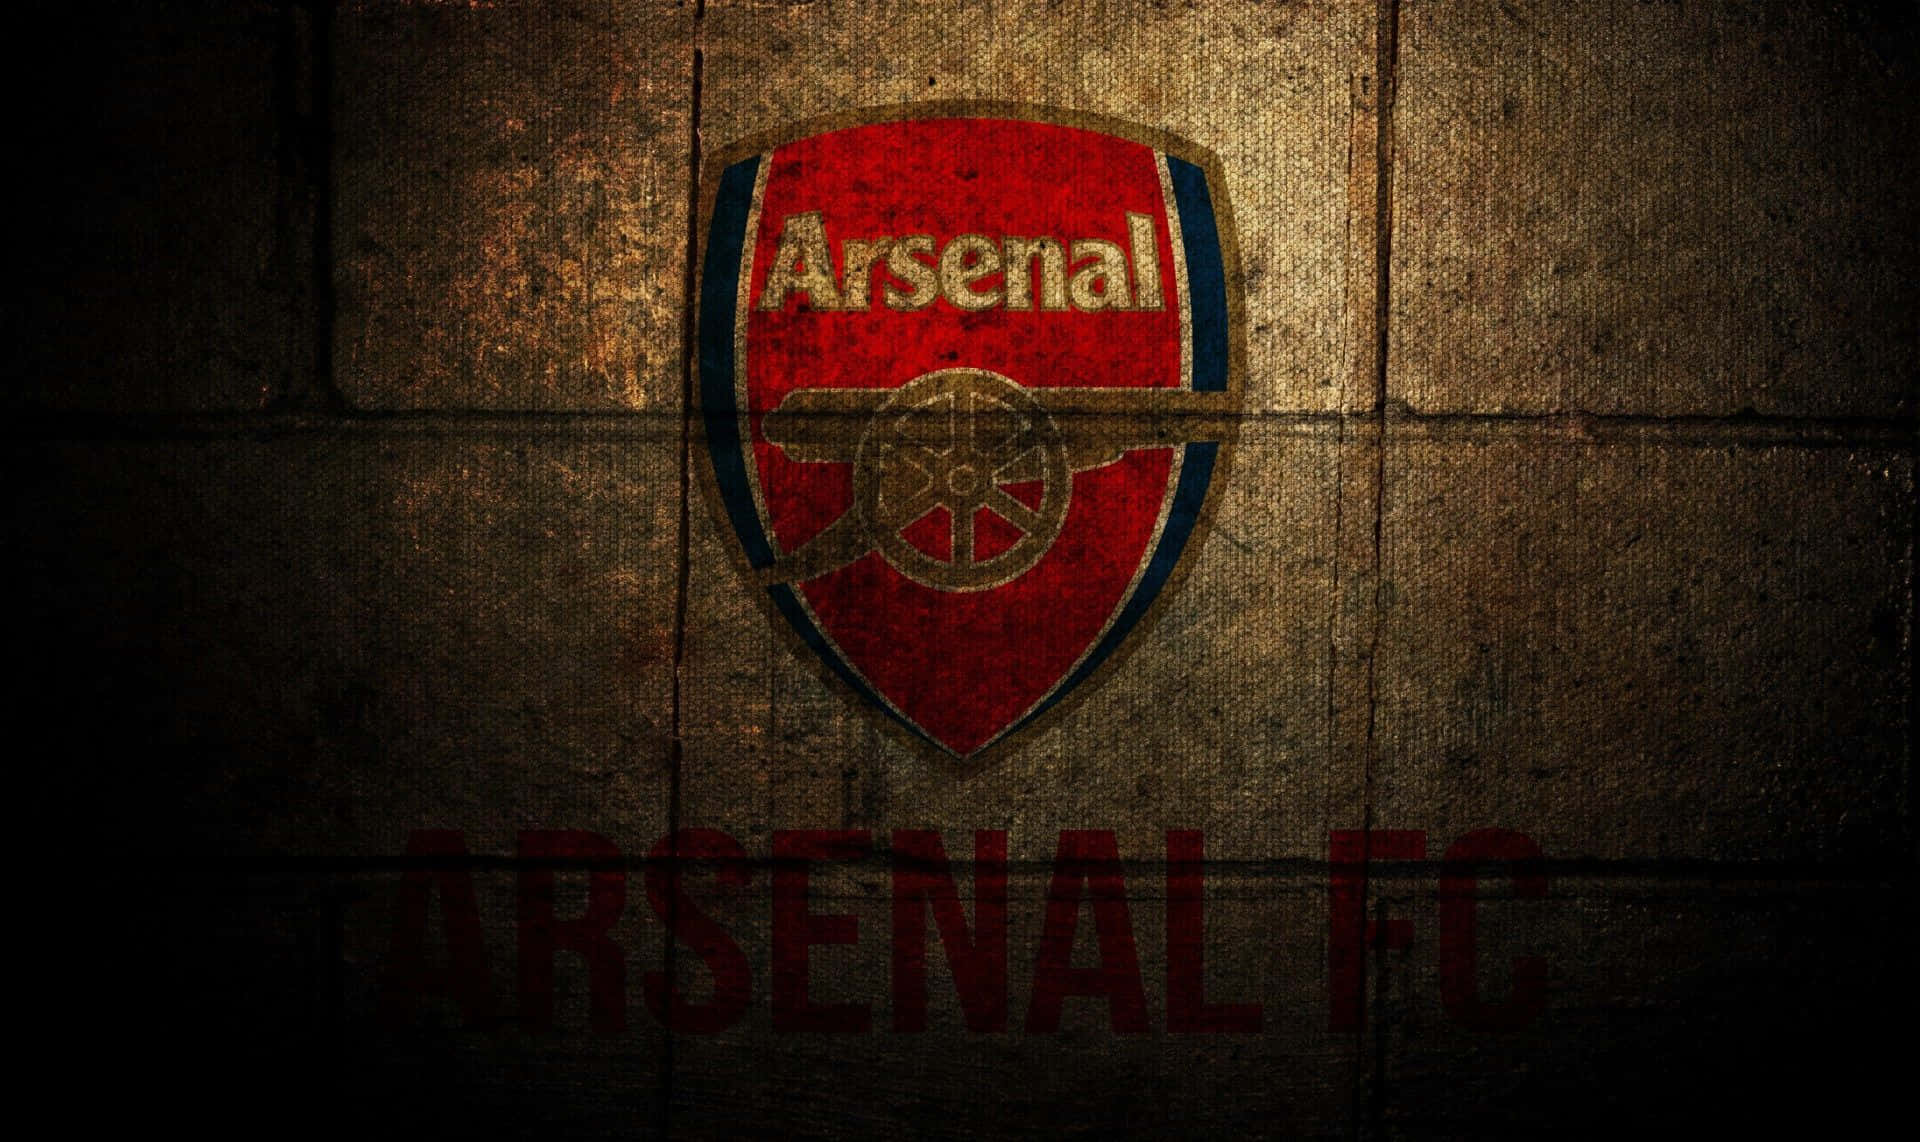 Arsenalhintergrund